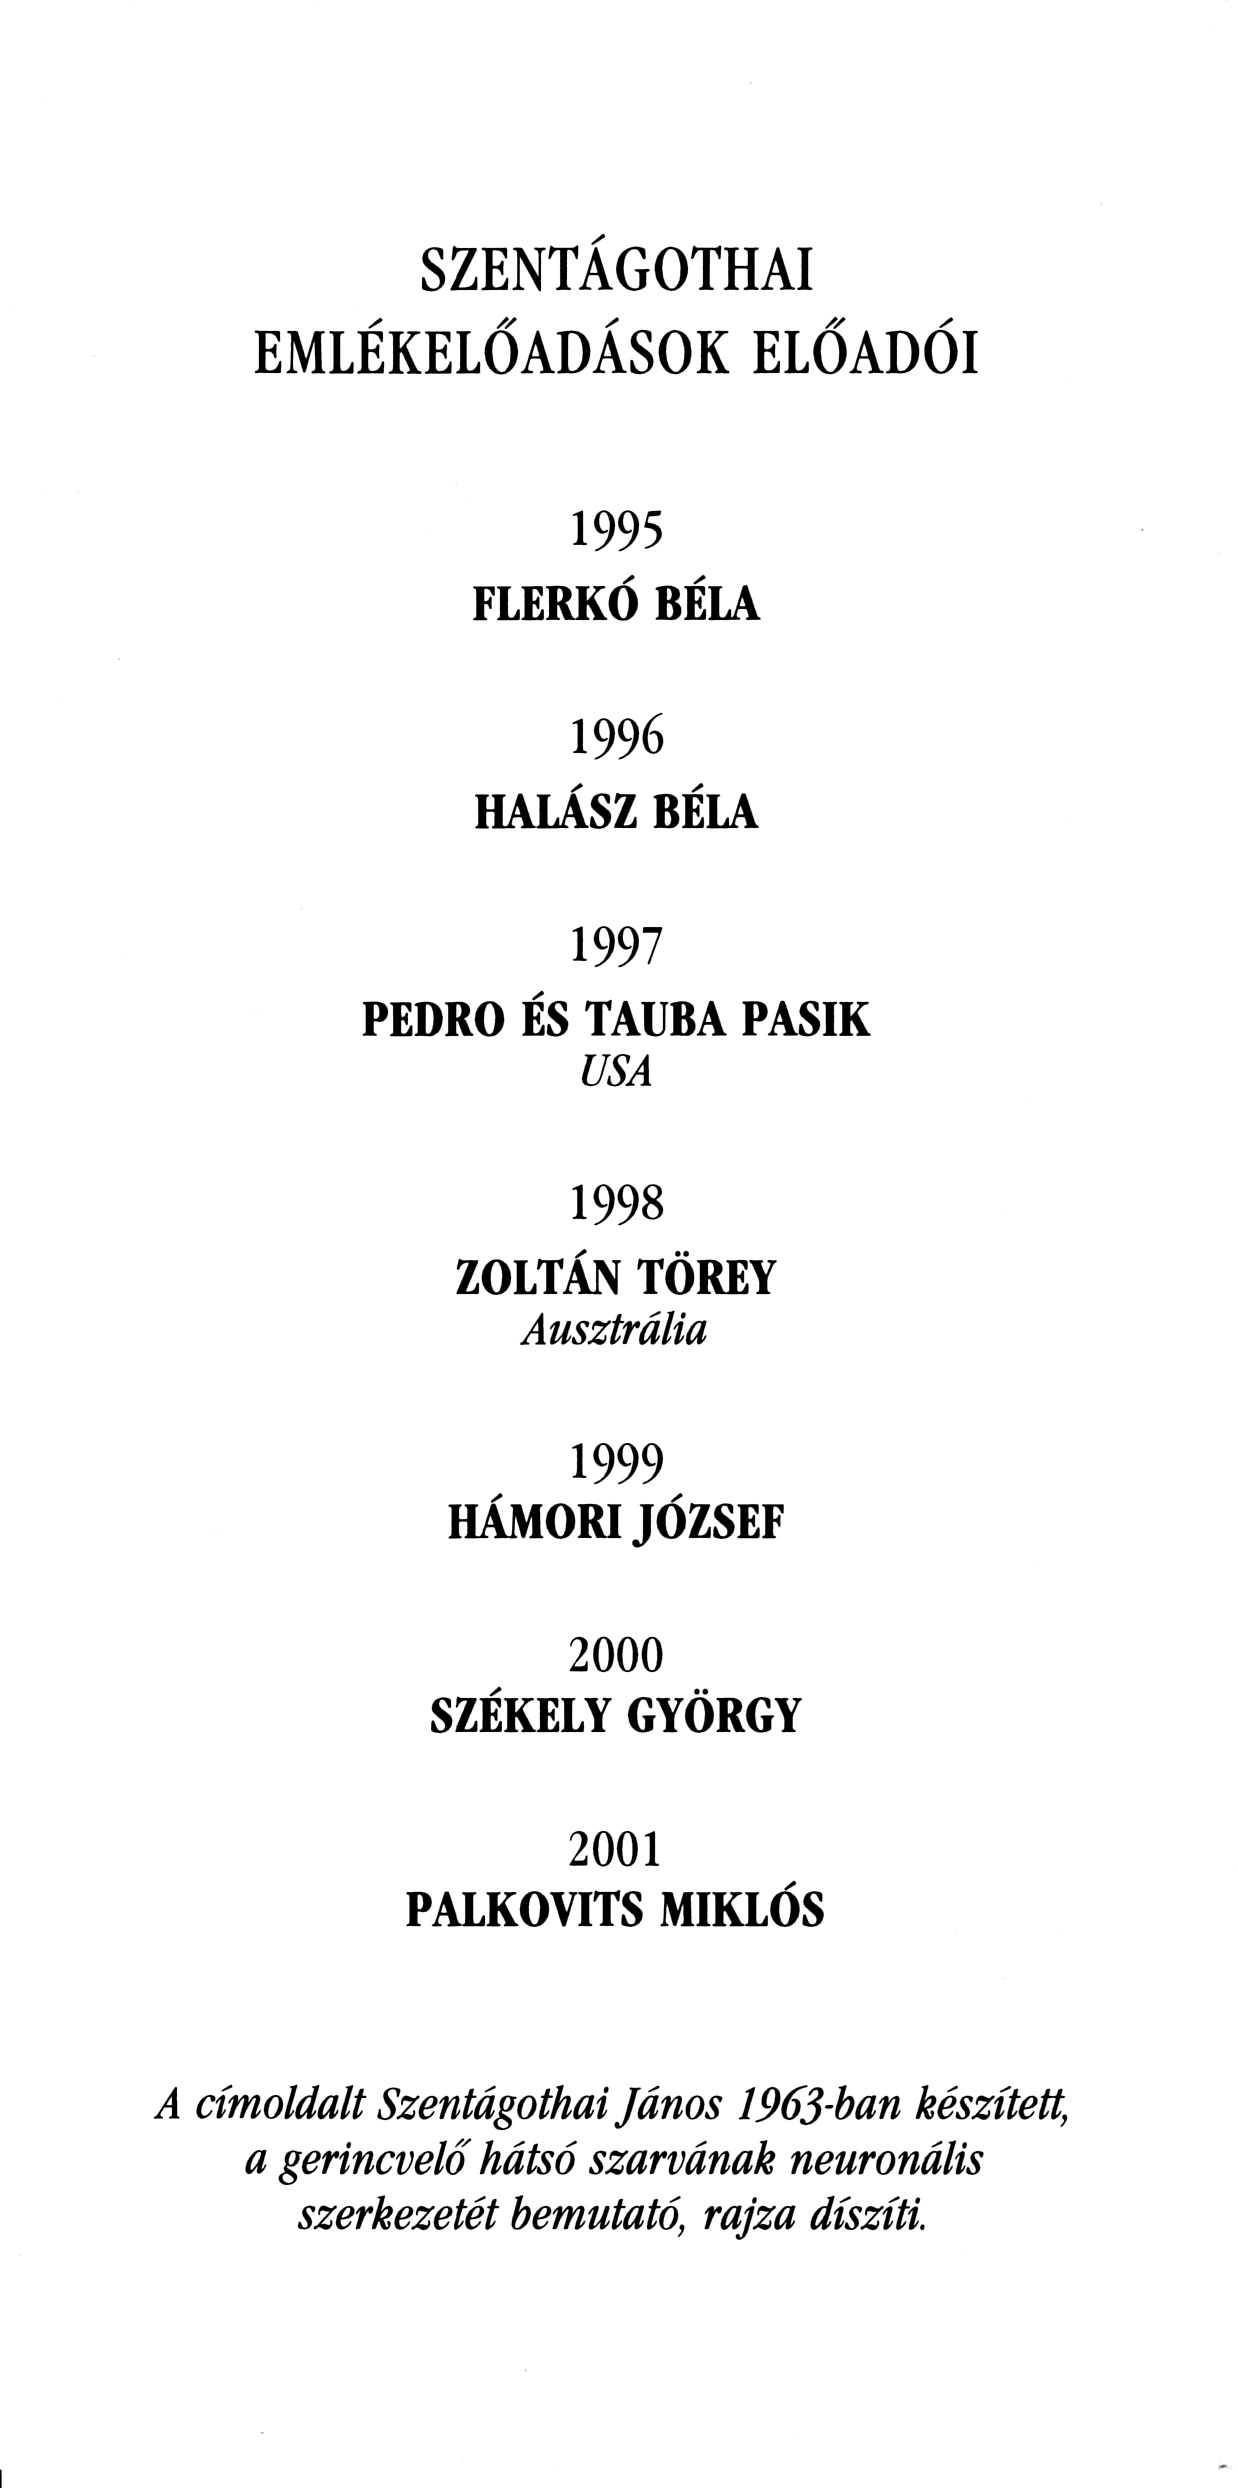 Lecturers of the "Szentagothai Memorial Lectures" between 1995-2001